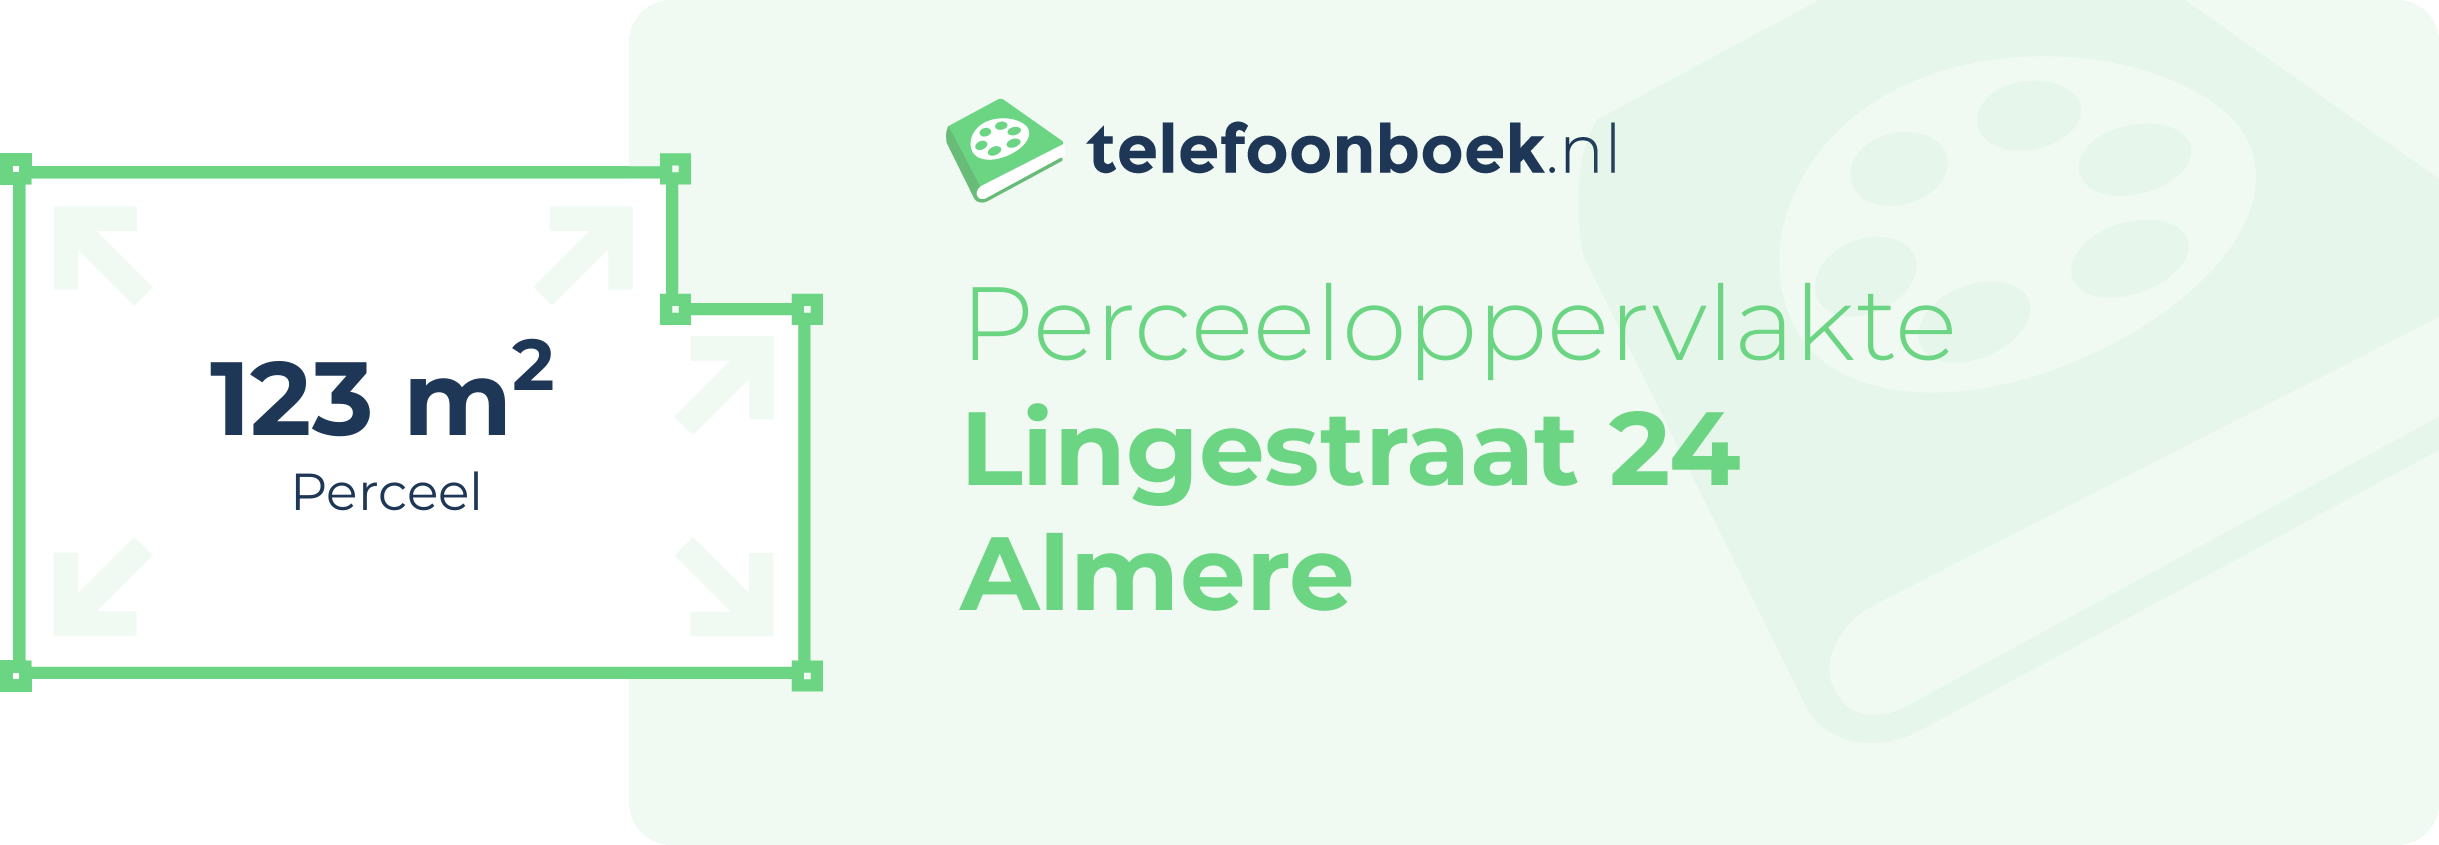 Perceeloppervlakte Lingestraat 24 Almere